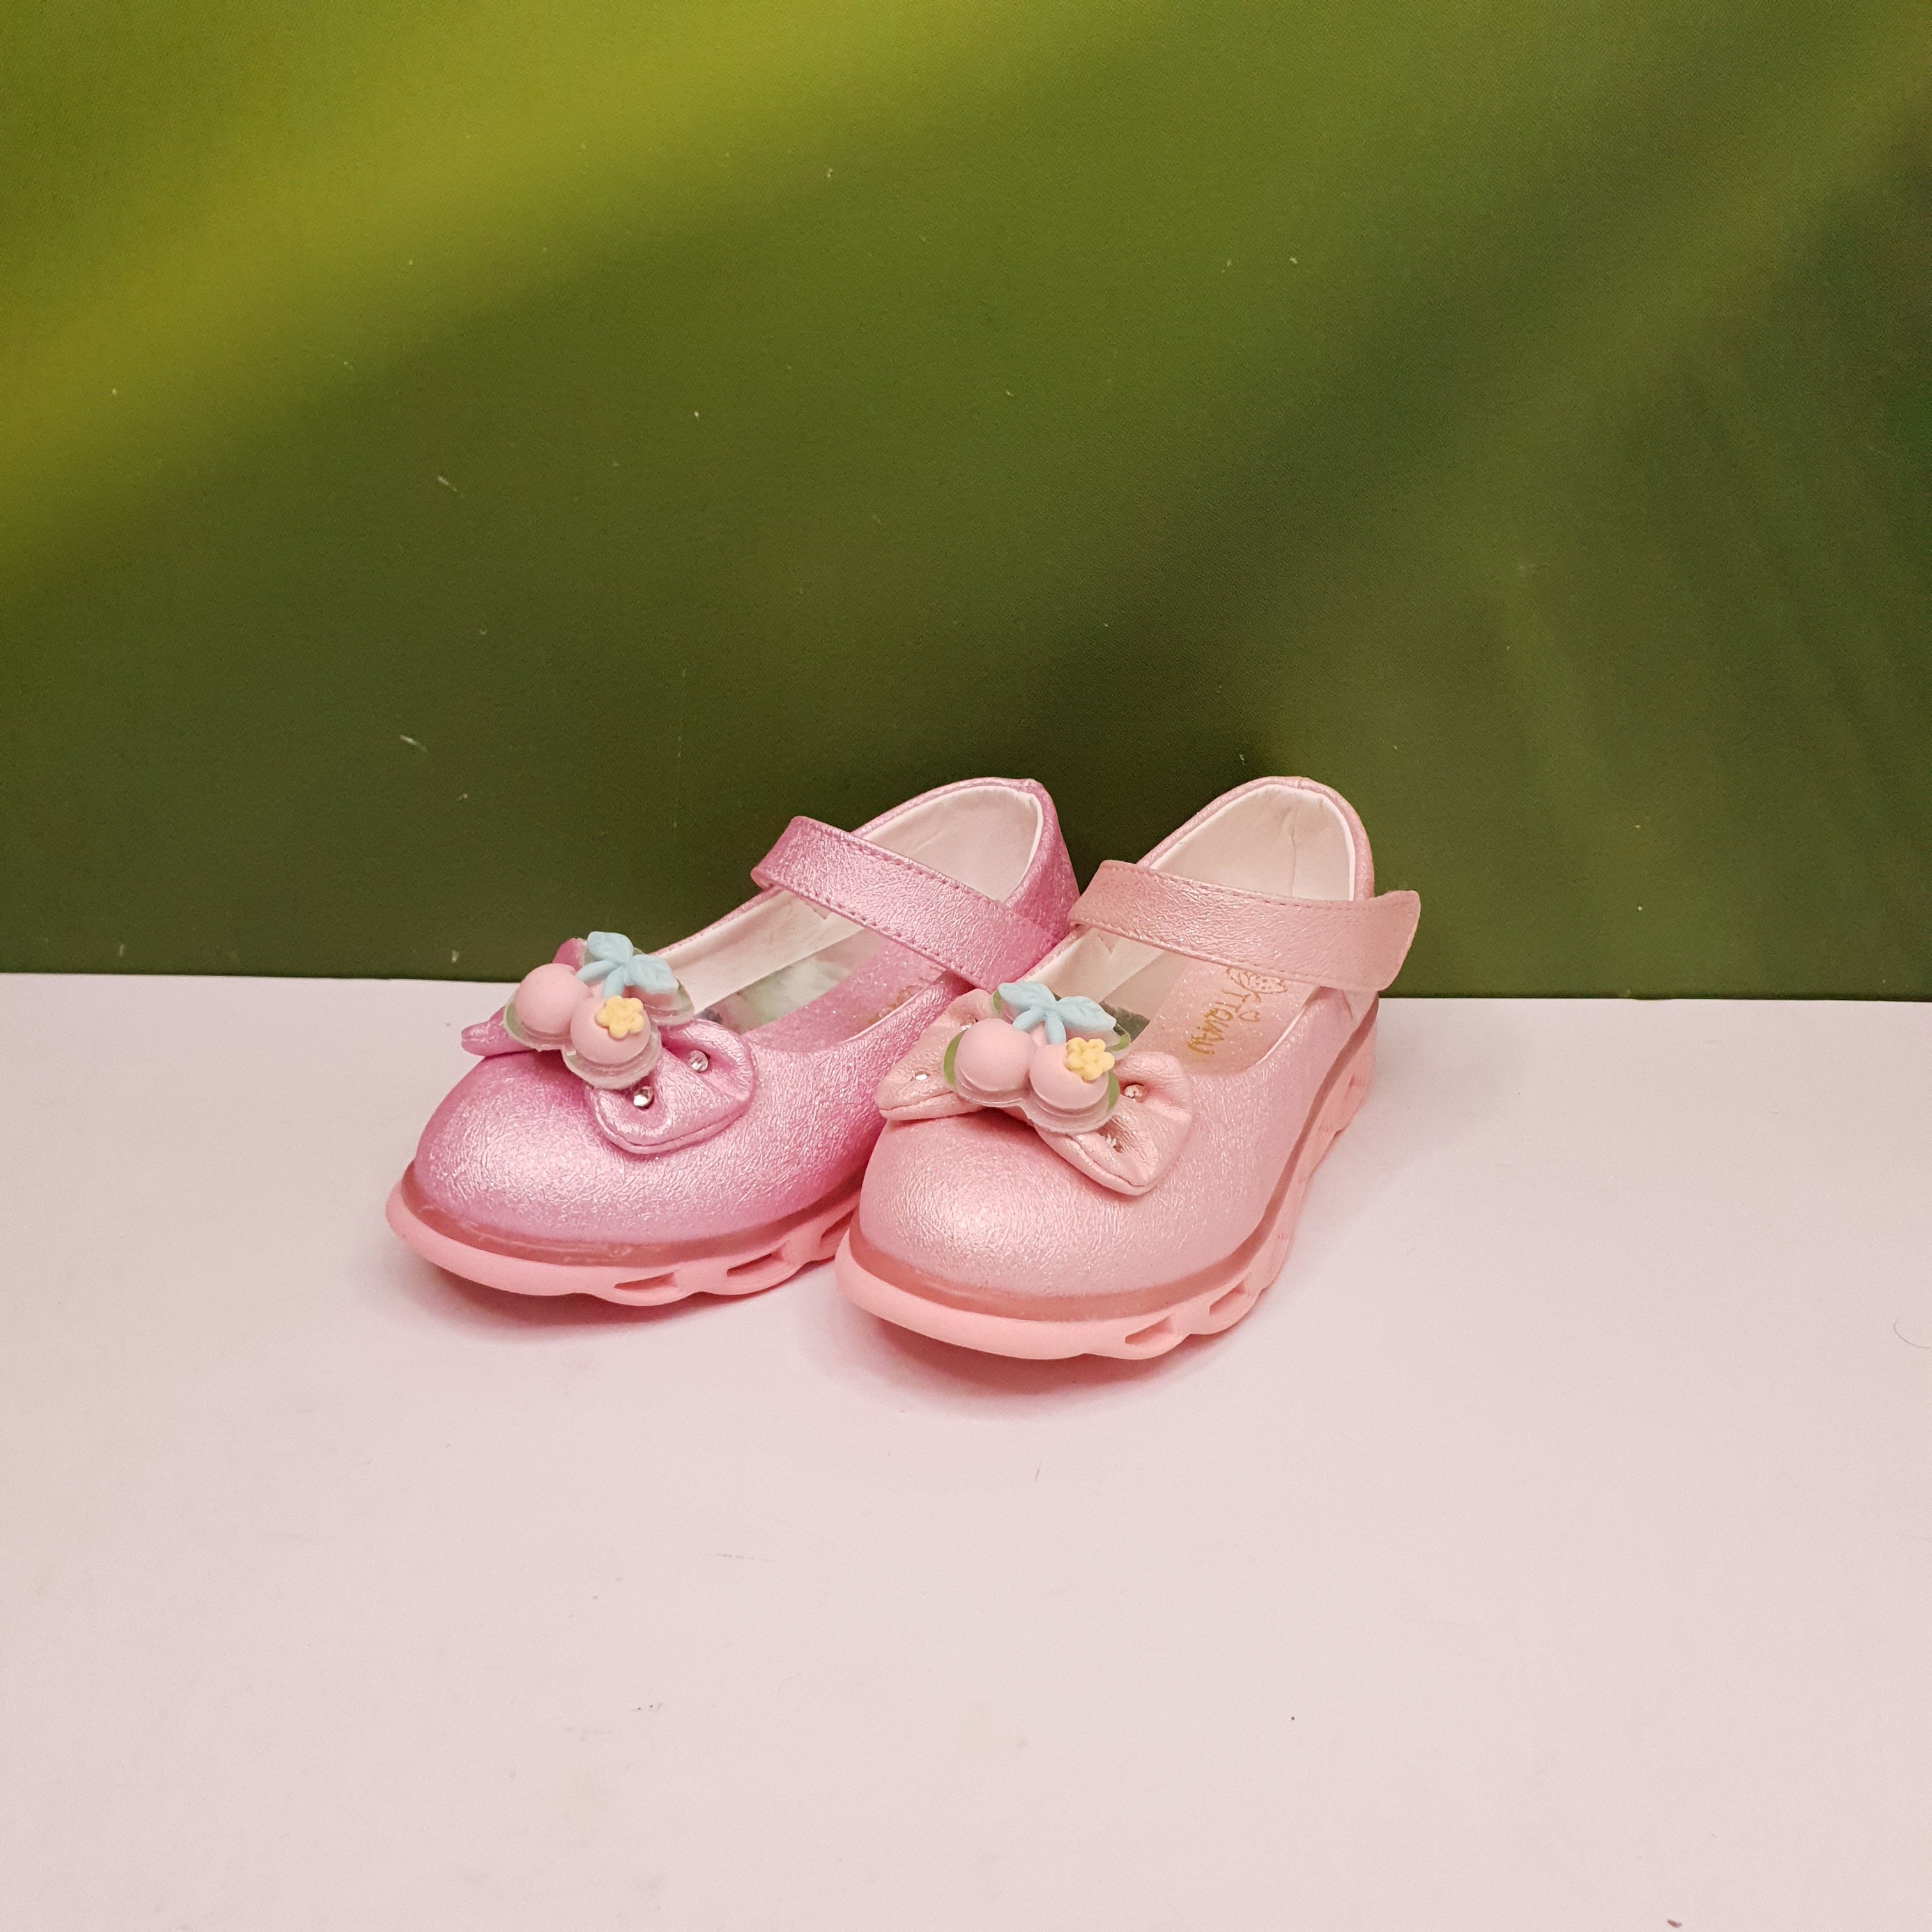 Bow Kids Pumps - Maha fashions -  Kids Footwear